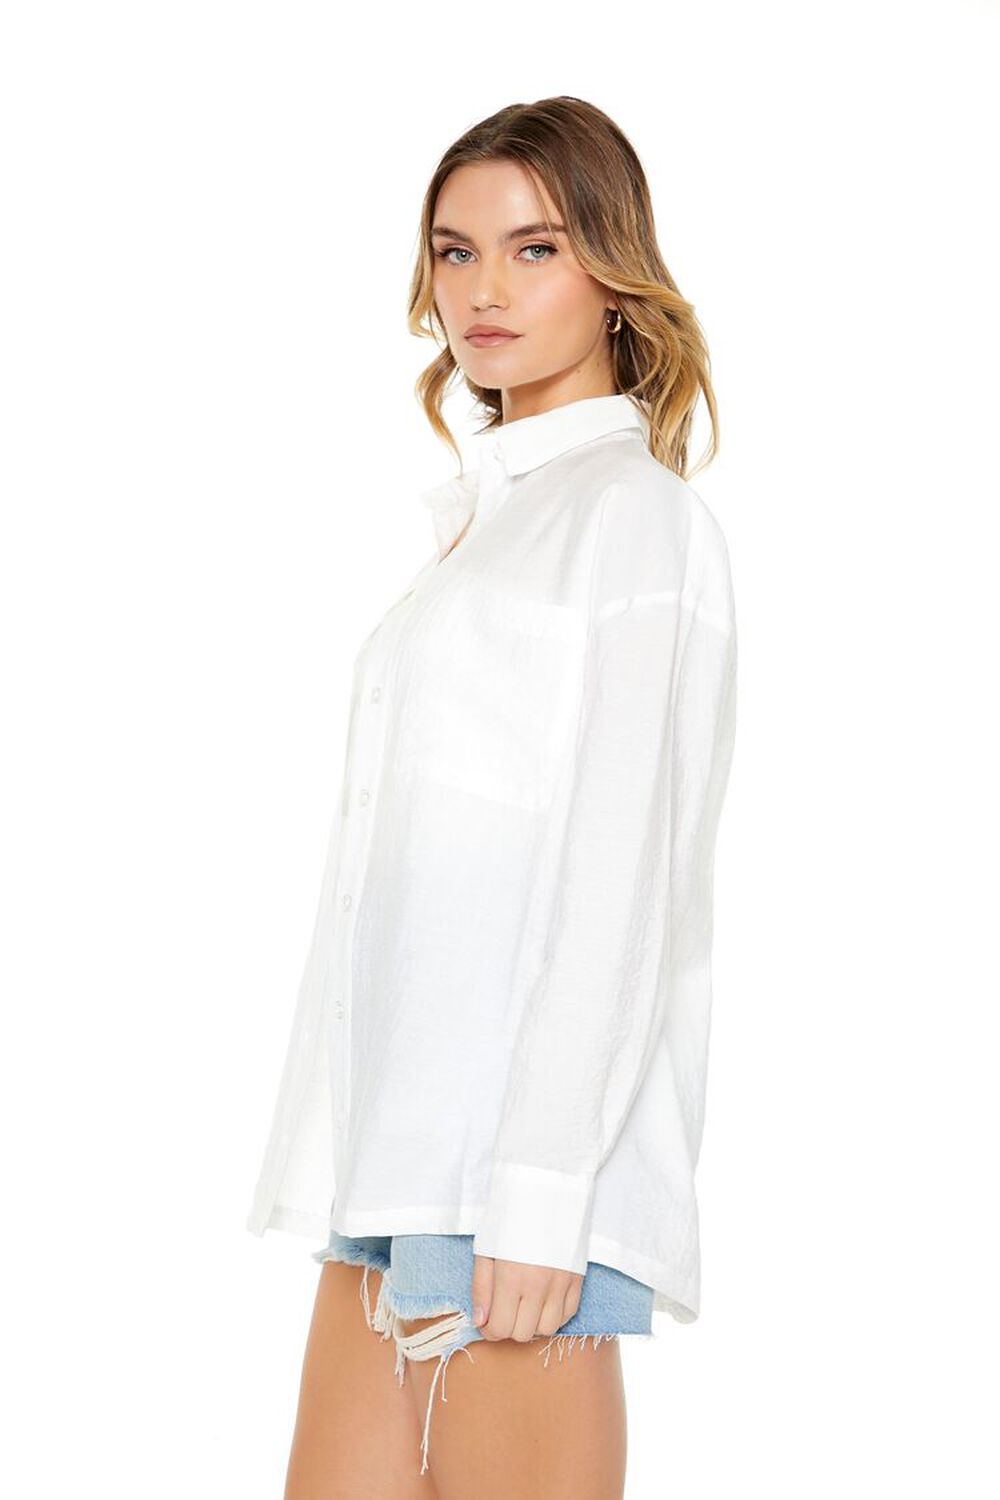 WHITE Crinkled Pocket Shirt, image 2